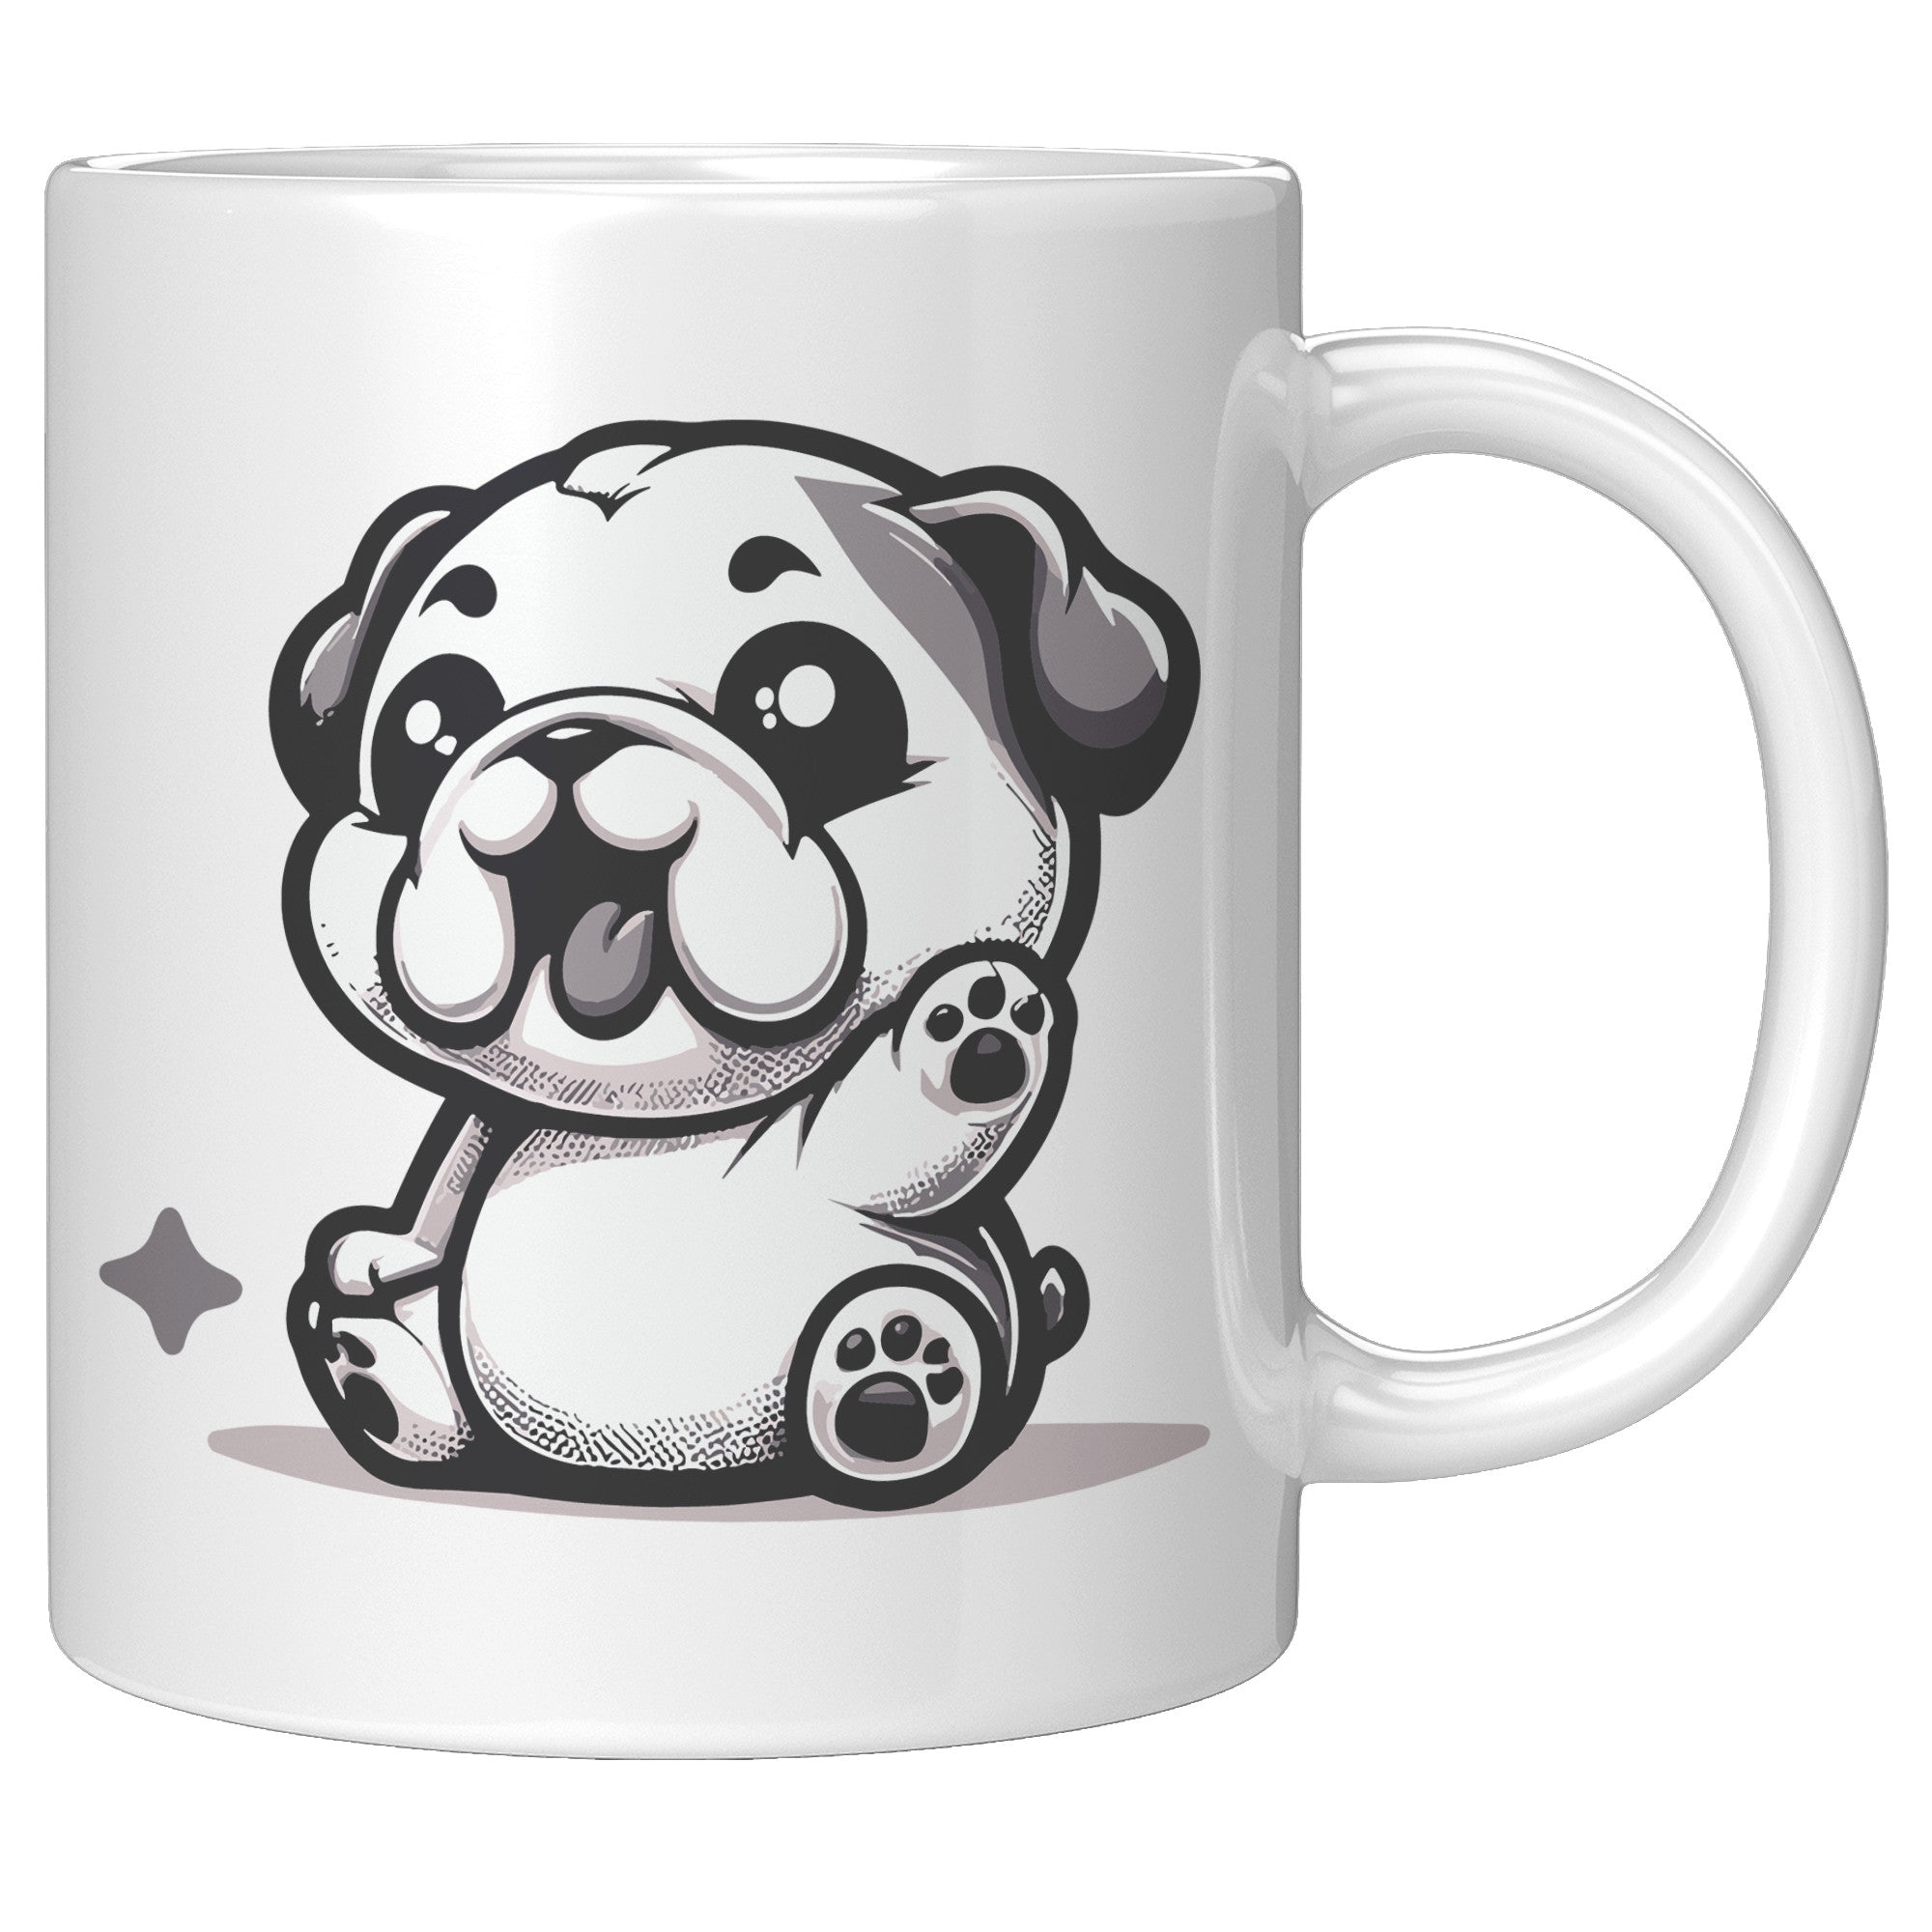 11oz French Bulldog Cartoon Coffee Mug - Frenchie Lover Coffee Mug - Perfect Gift for French Bulldog Owners - Adorable Bat-Eared Dog Coffee Mug - G